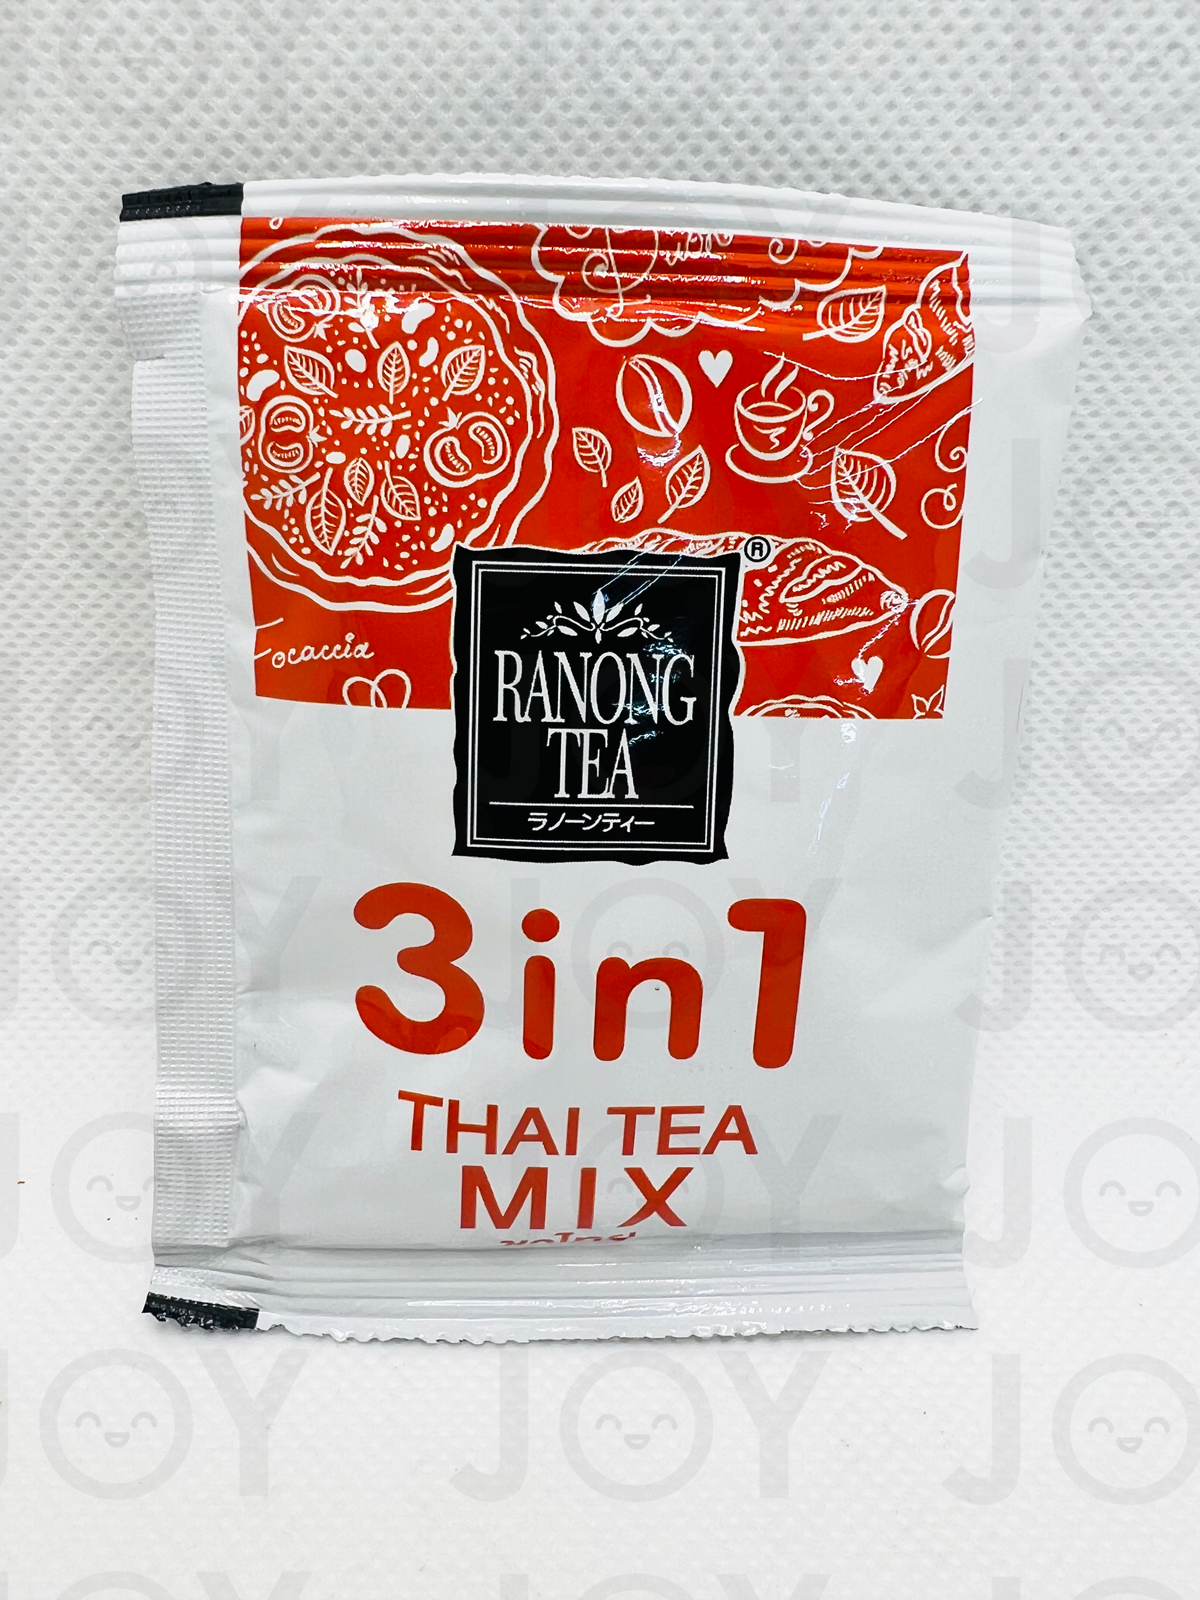 Instant Thai Tea